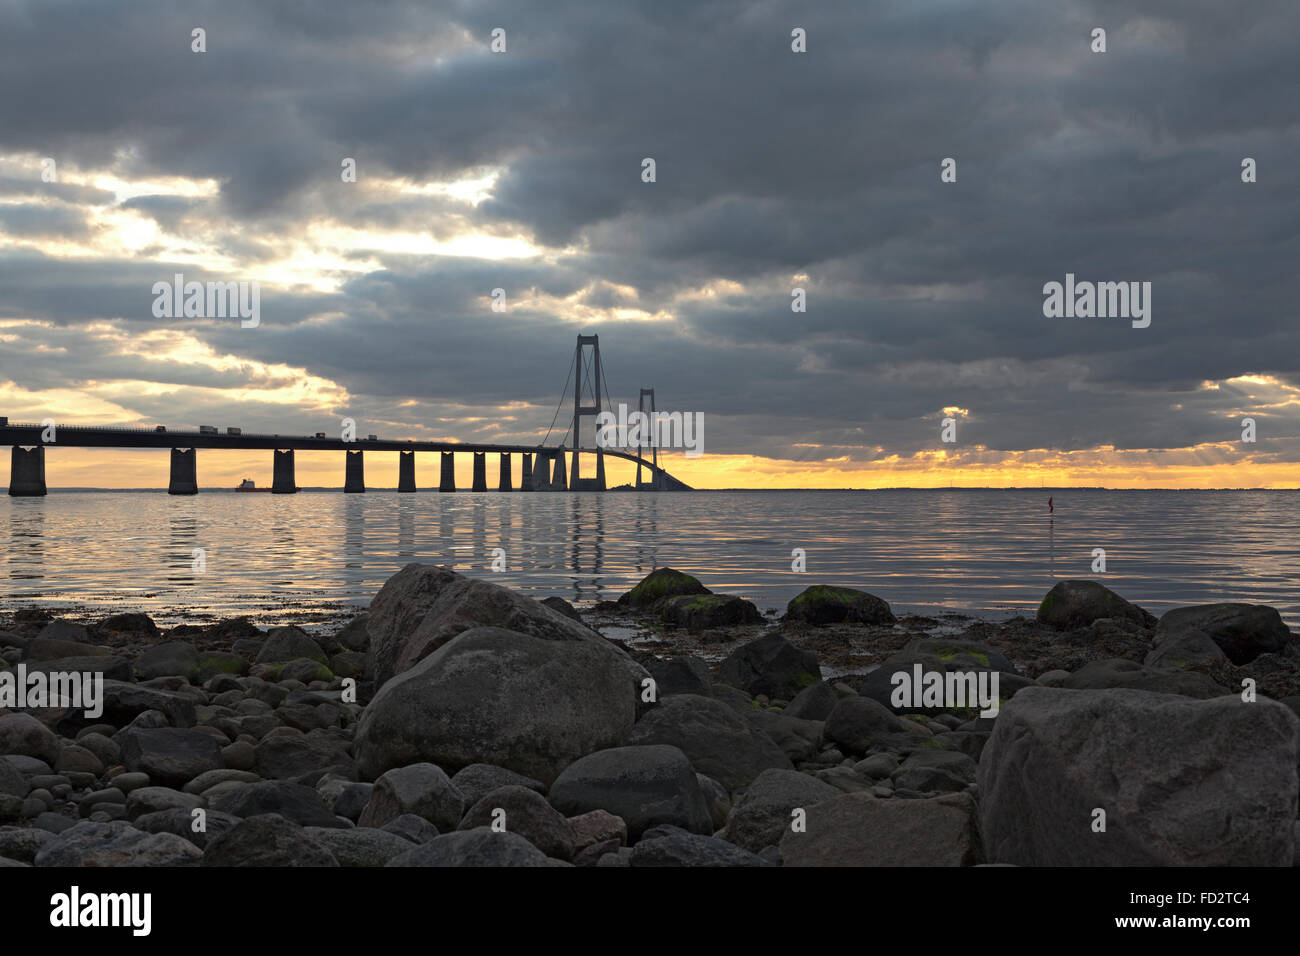 Le pont suspendu de Storebælt relie la Zélande à Fynen au Danemark, ce qui permet aux voyageurs de gagner un long voyage en mer et une heure. Une architecture unique. Banque D'Images